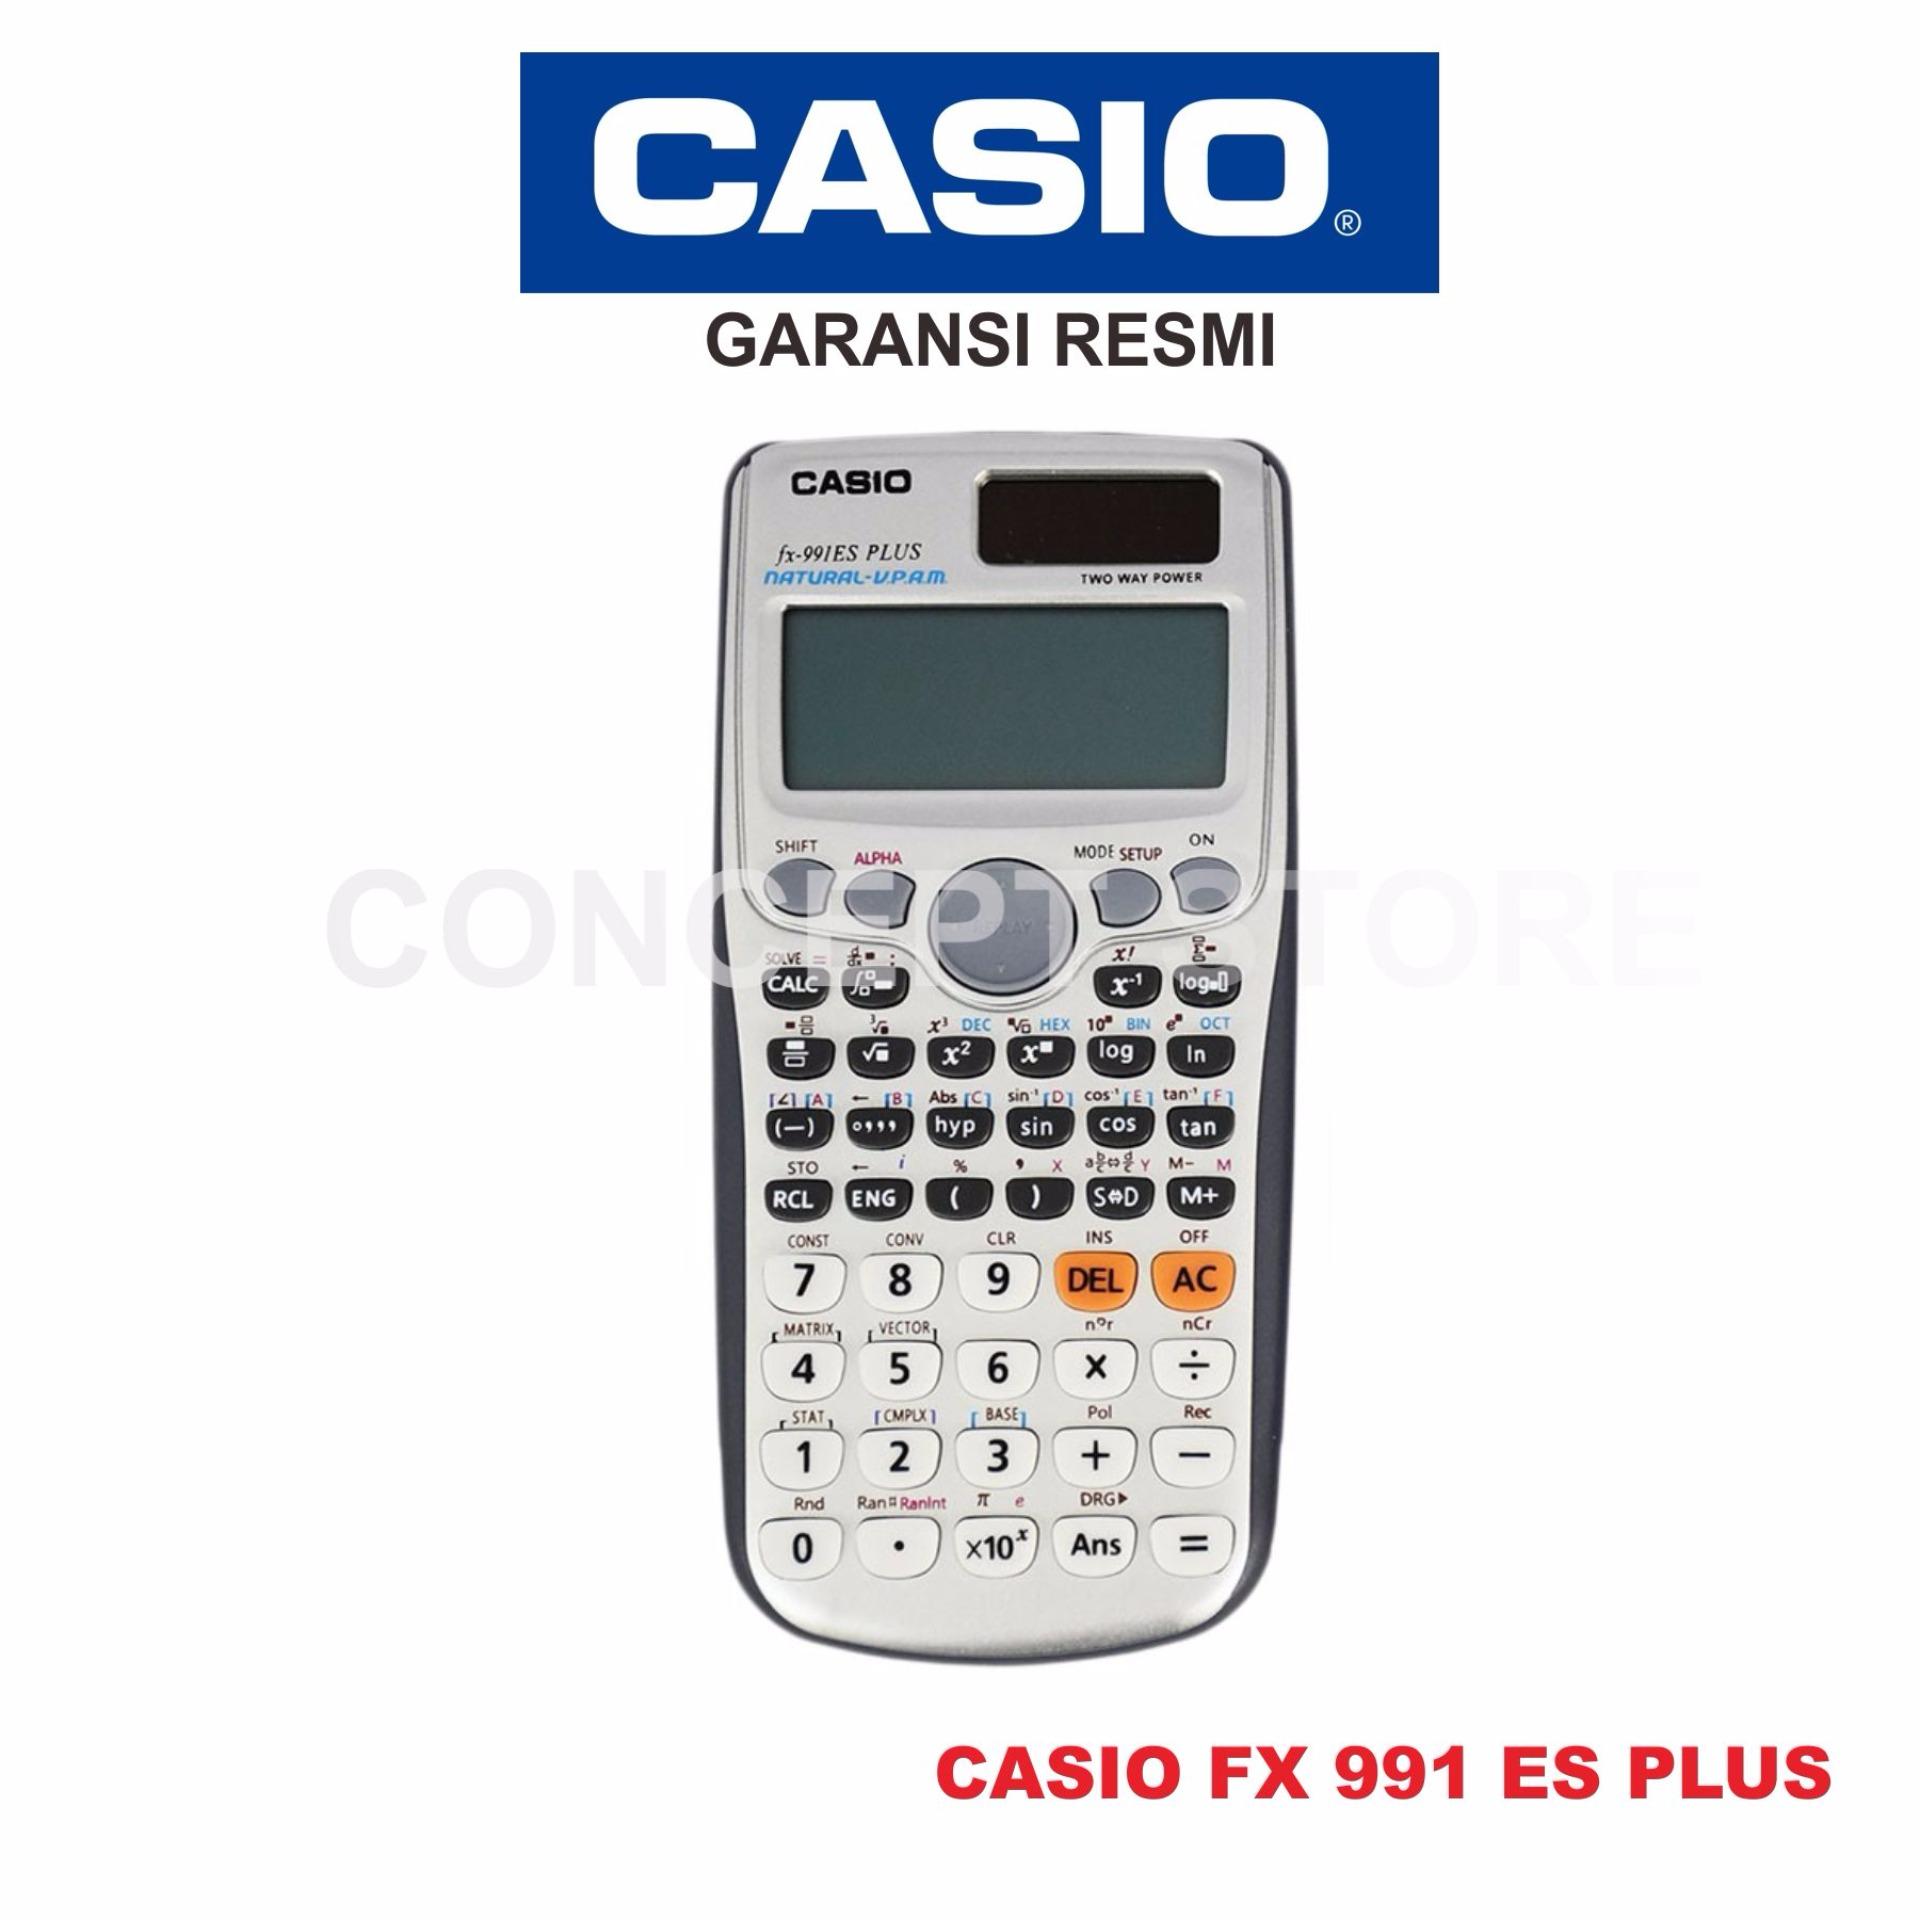 CASIO FX 991 ESPLUS / FX991 ES PLUS / FX991ESPLUS RESMI